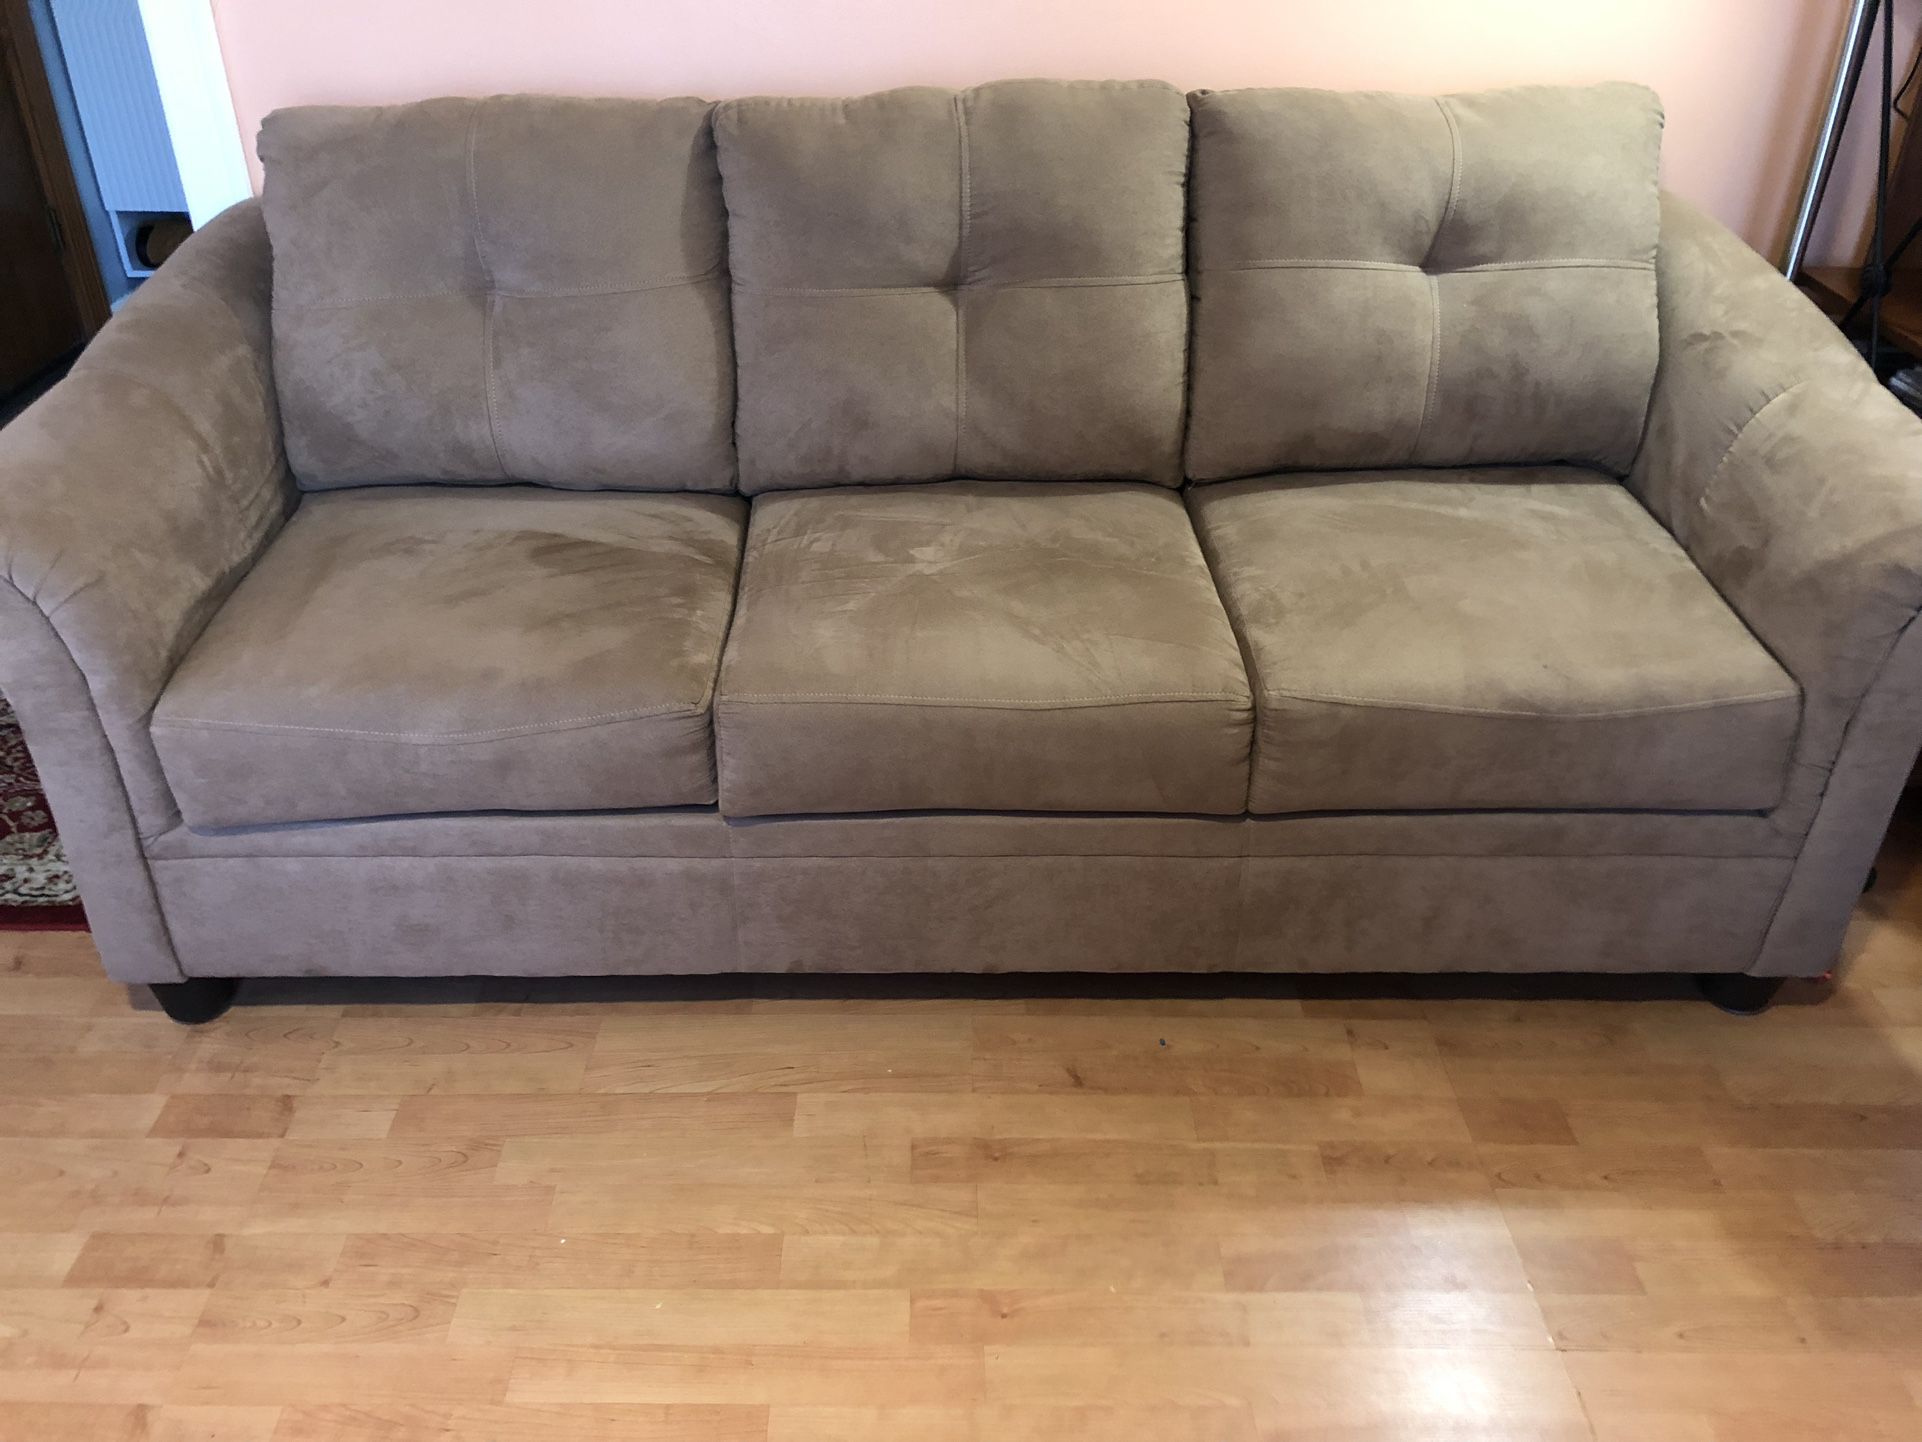 Living Room Set For Sale!